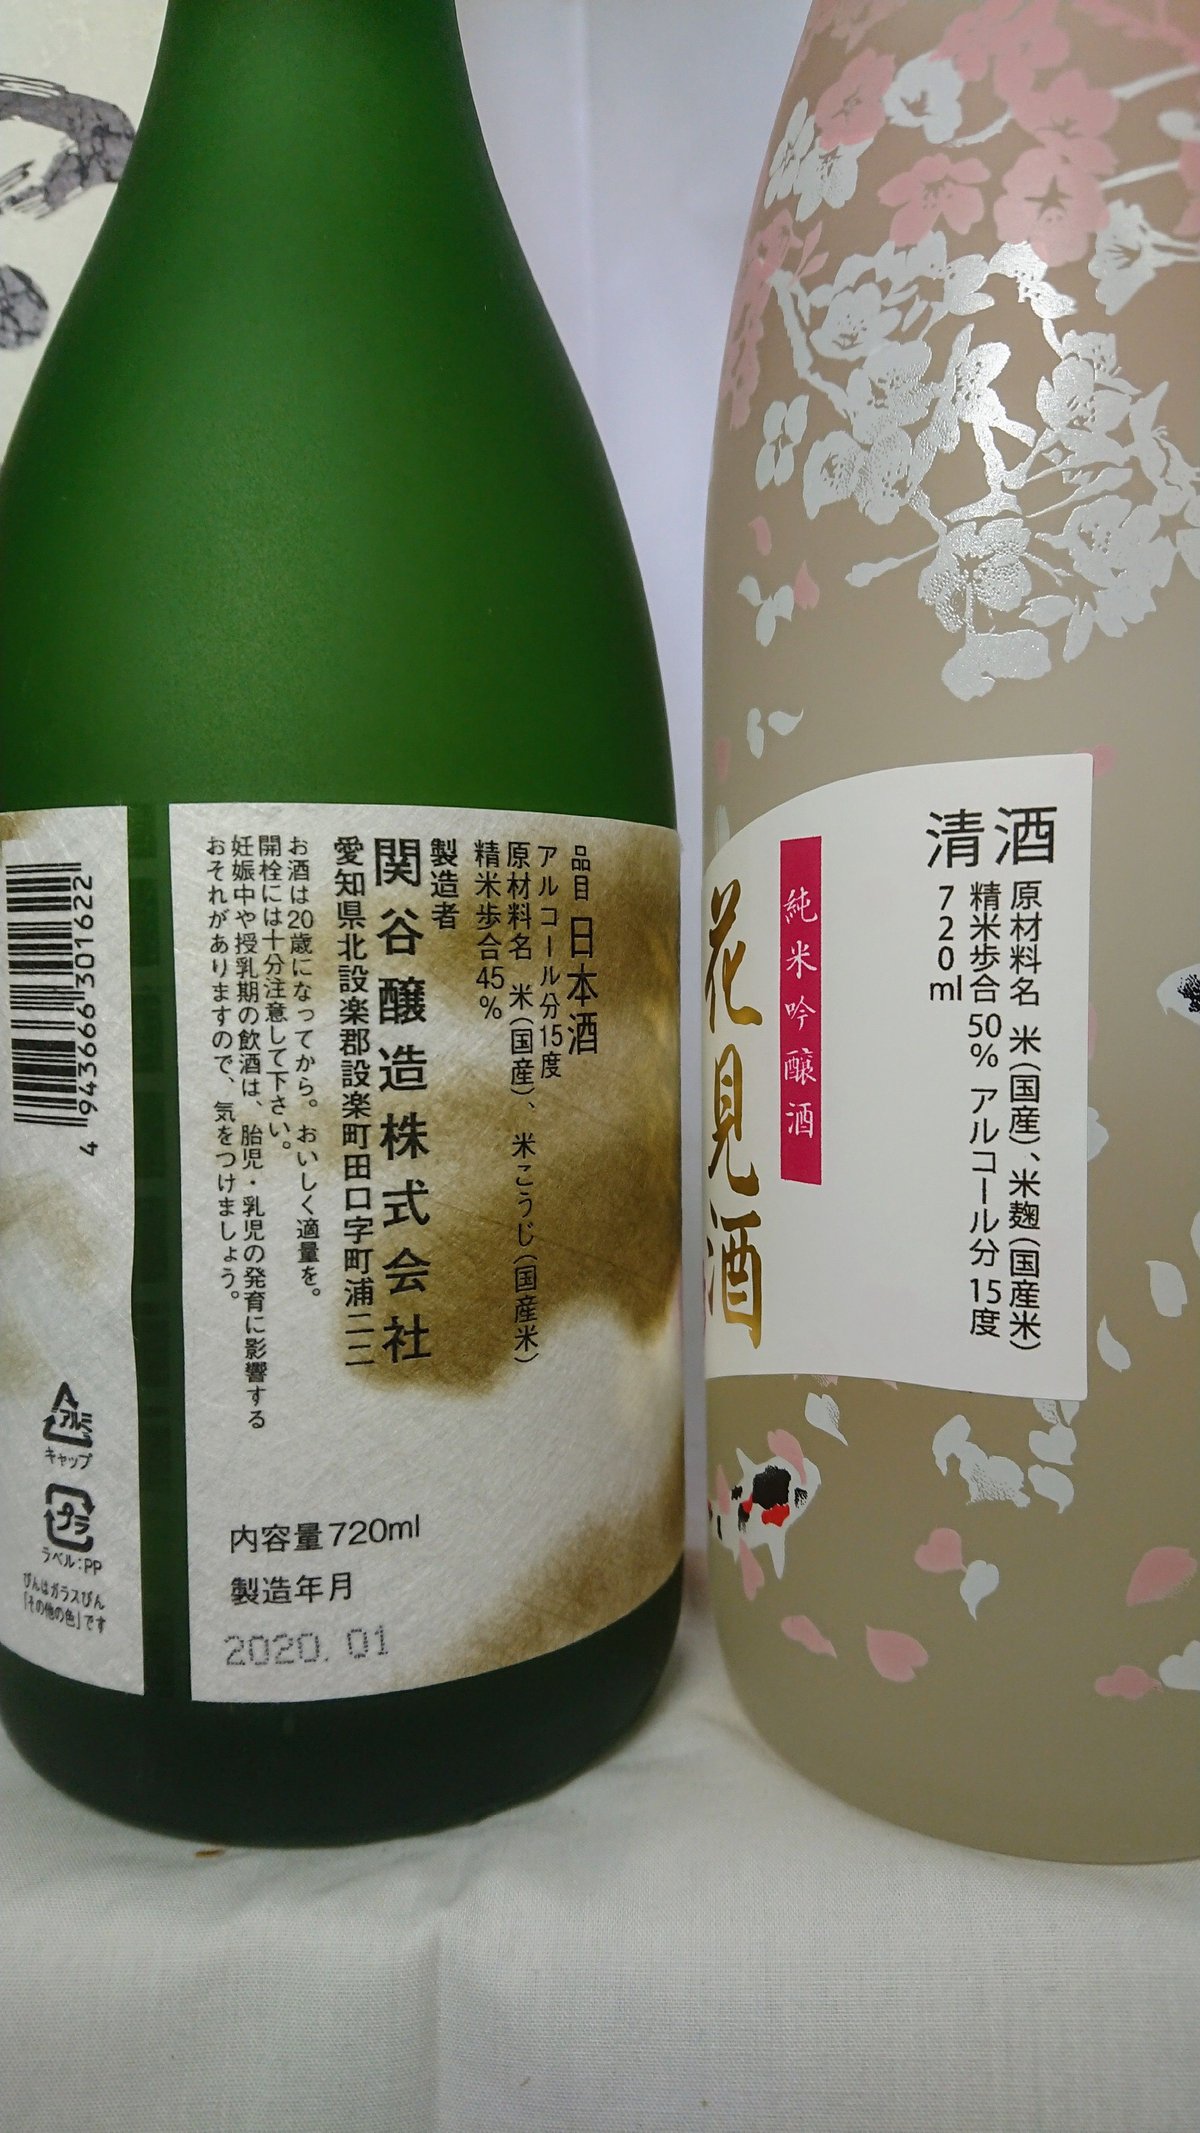 純米大吟醸 空 蓬莱泉 関谷醸造 1800ml 2本セット  純米大吟醸 蓬莱泉